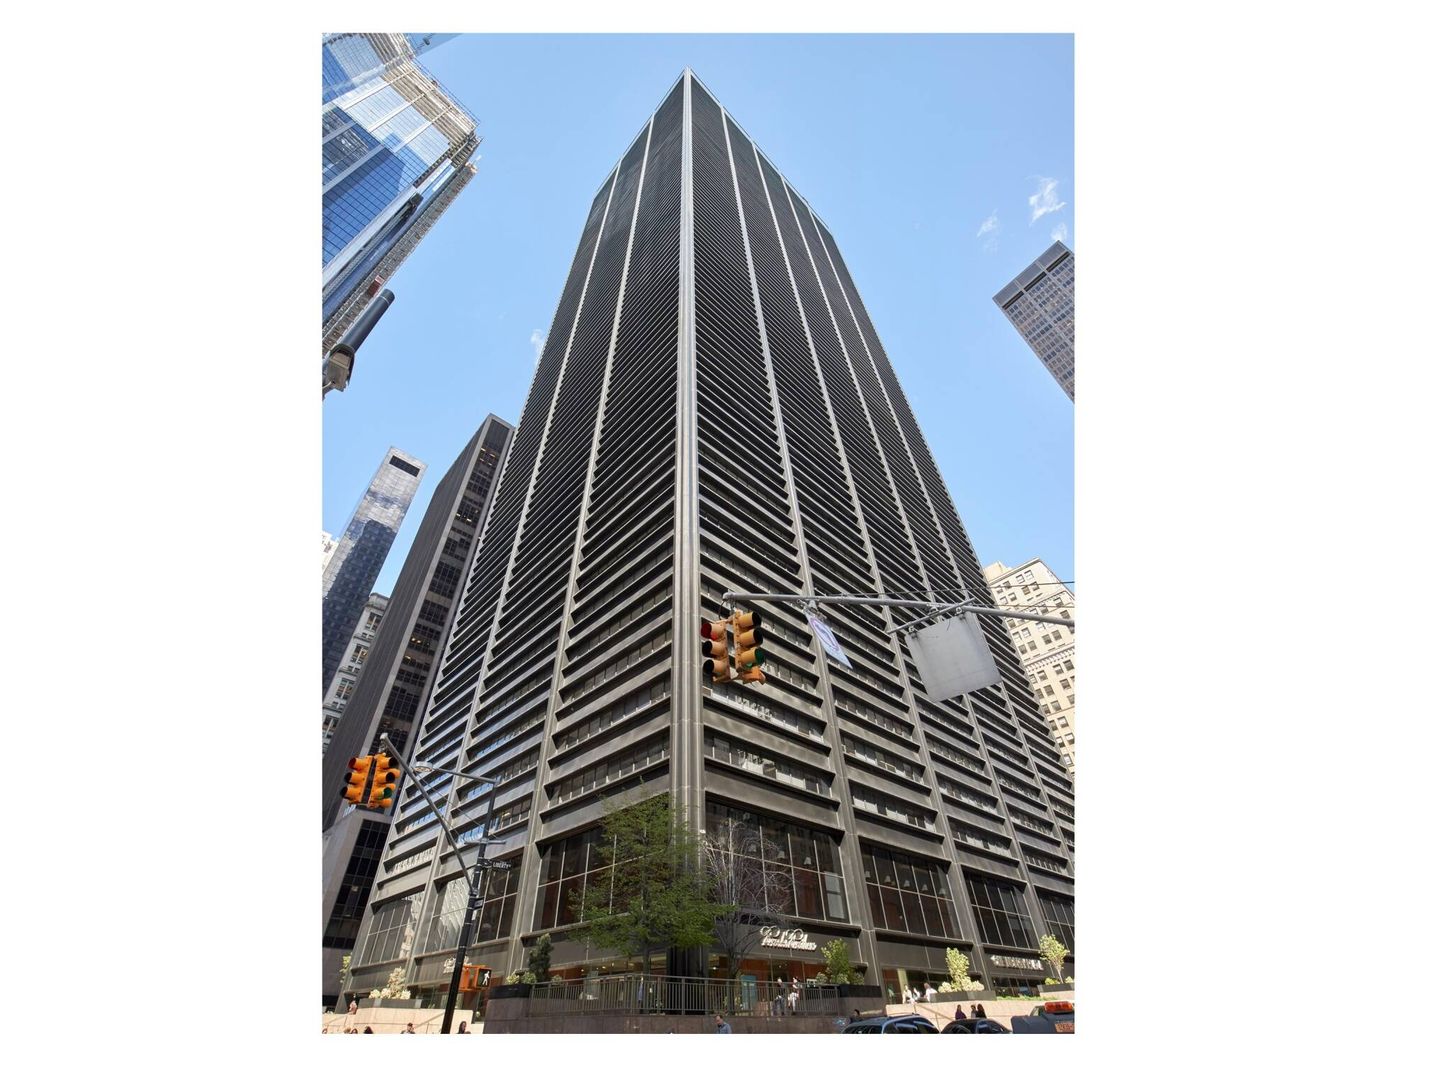 Rascacielos One Liberty Plaza de Nueva York, inmueble que aloja la sede central de Cleary Gottlieb. (Alamy/Radharc Images)